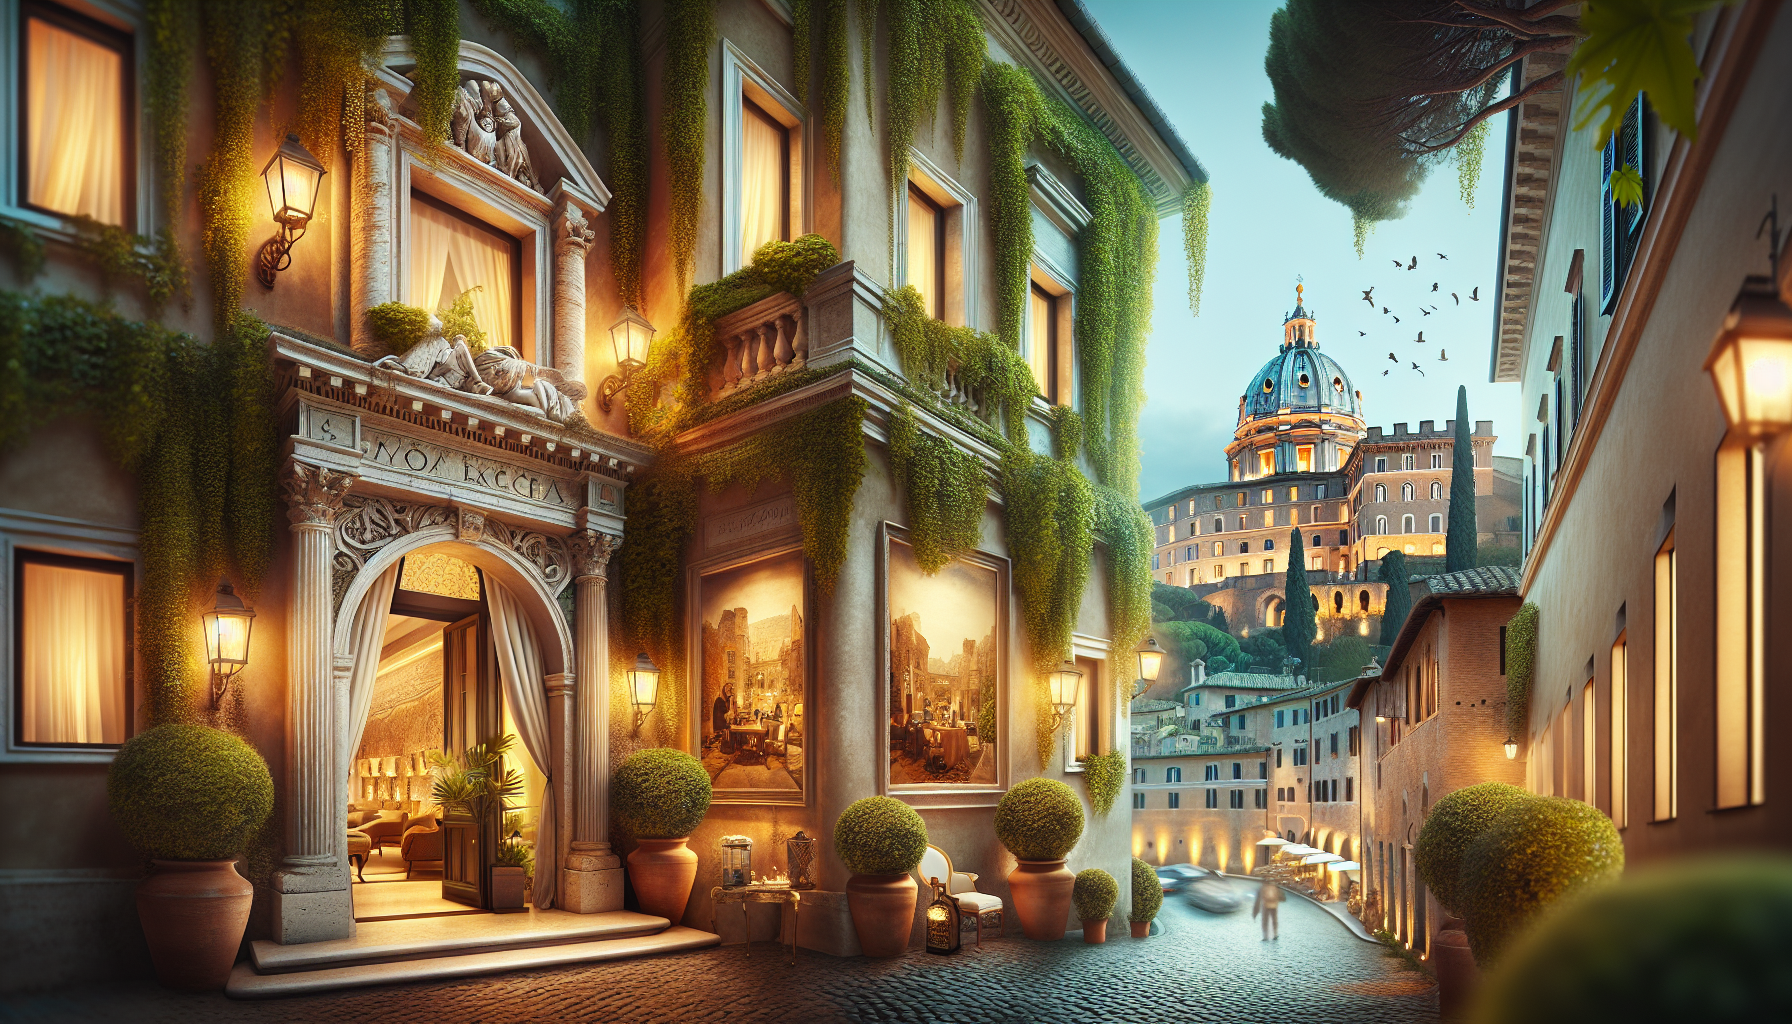 découvrez les adresses secrètes des hôtels de charme à rome et laissez-vous séduire par leur charme unique au coeur de la ville éternelle.